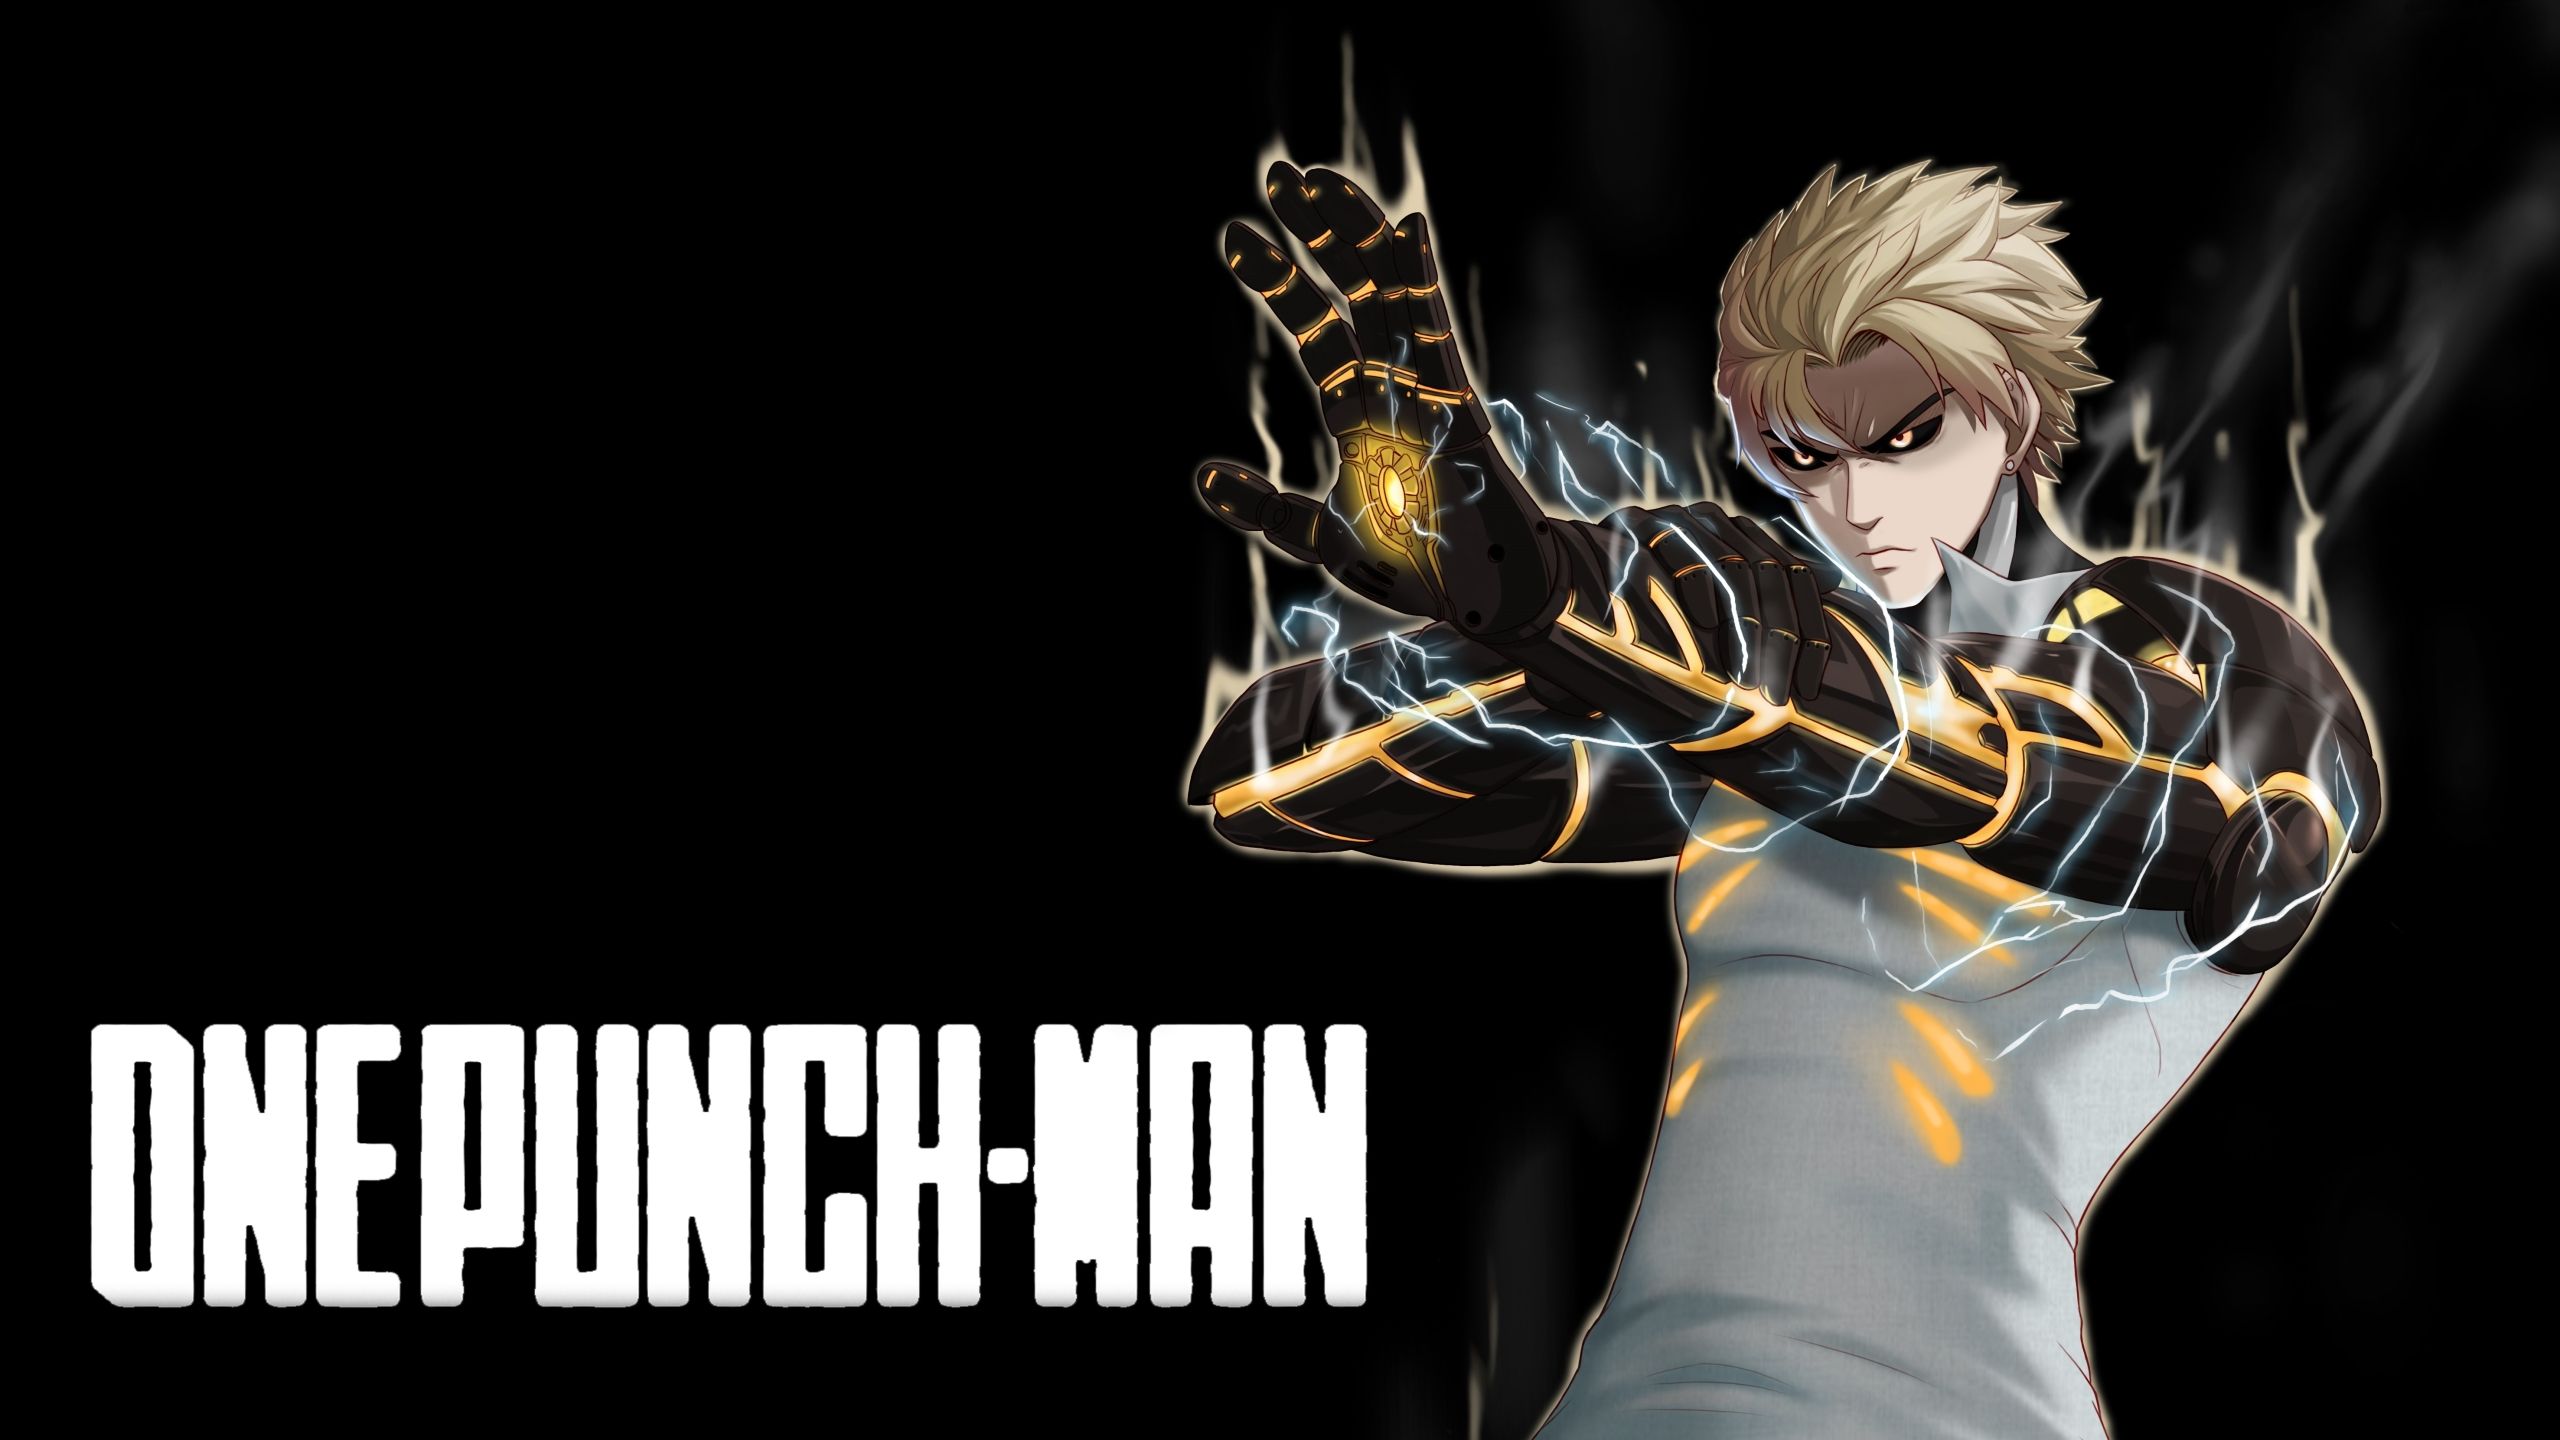 Saitama Genos One Punch Man HD 4K Wallpaper #6.3080